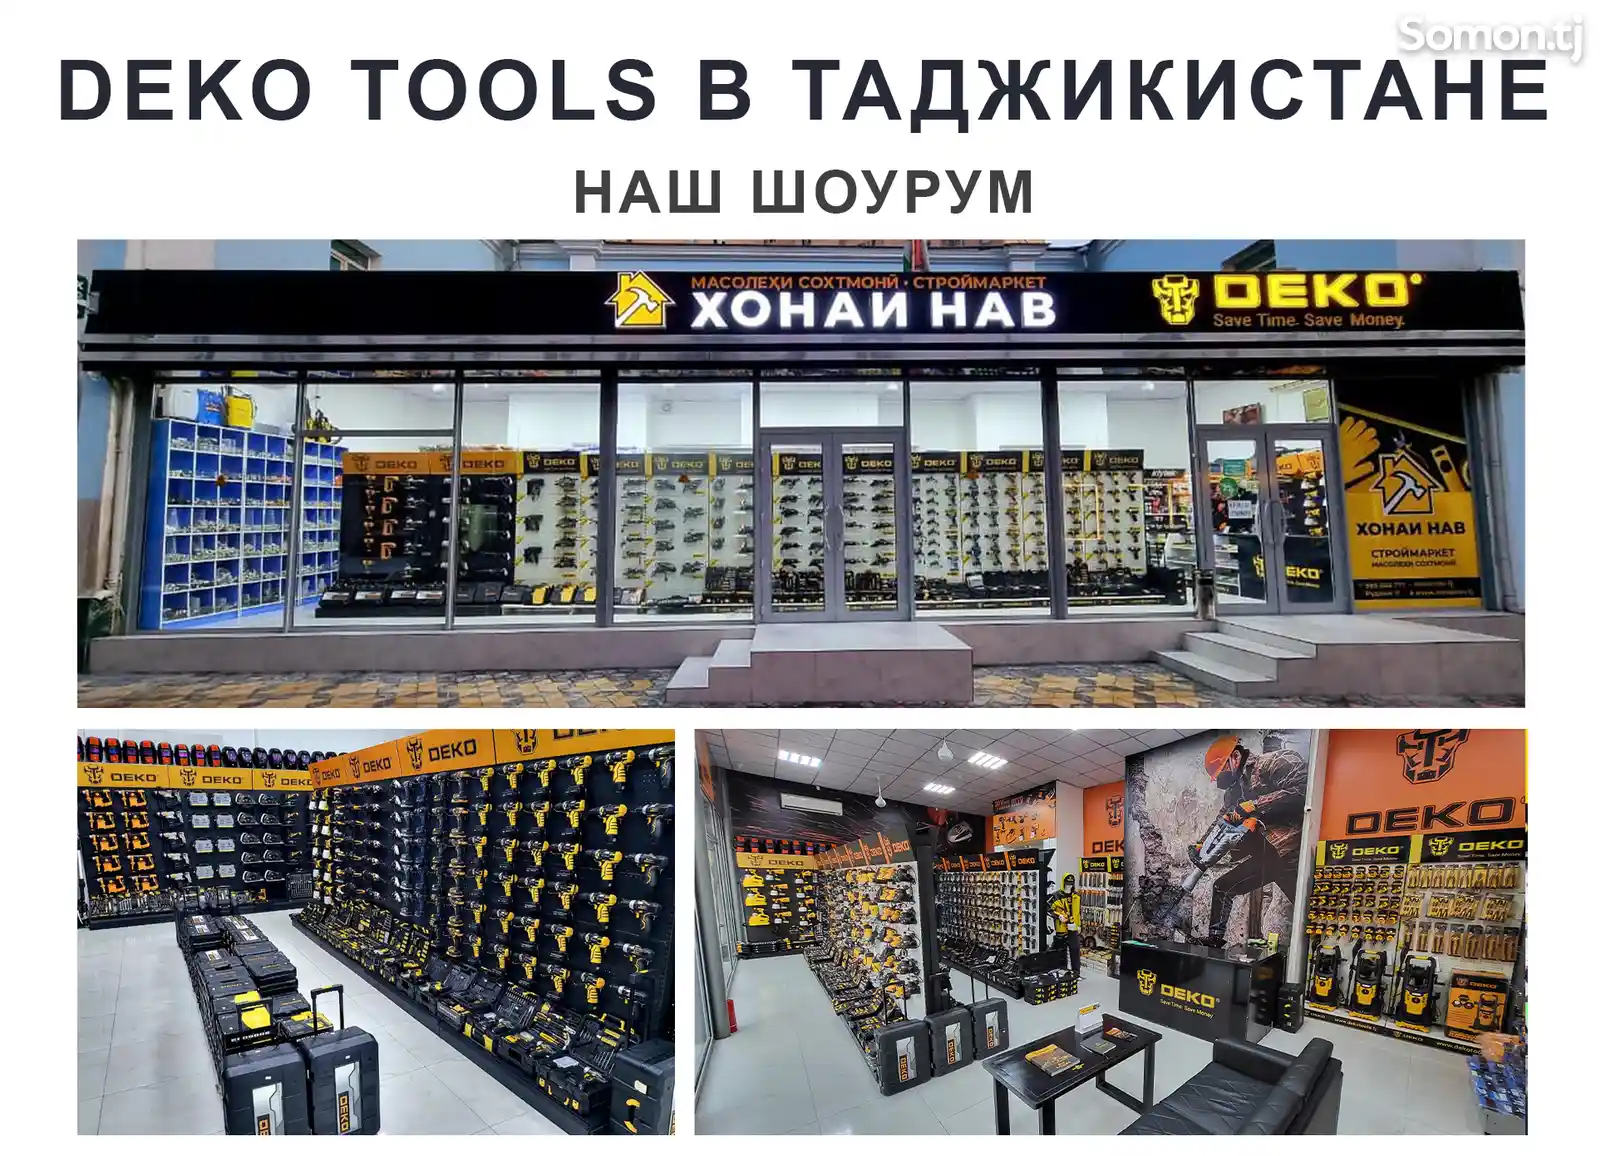 Набор инструментов DEKO DKMT165-9